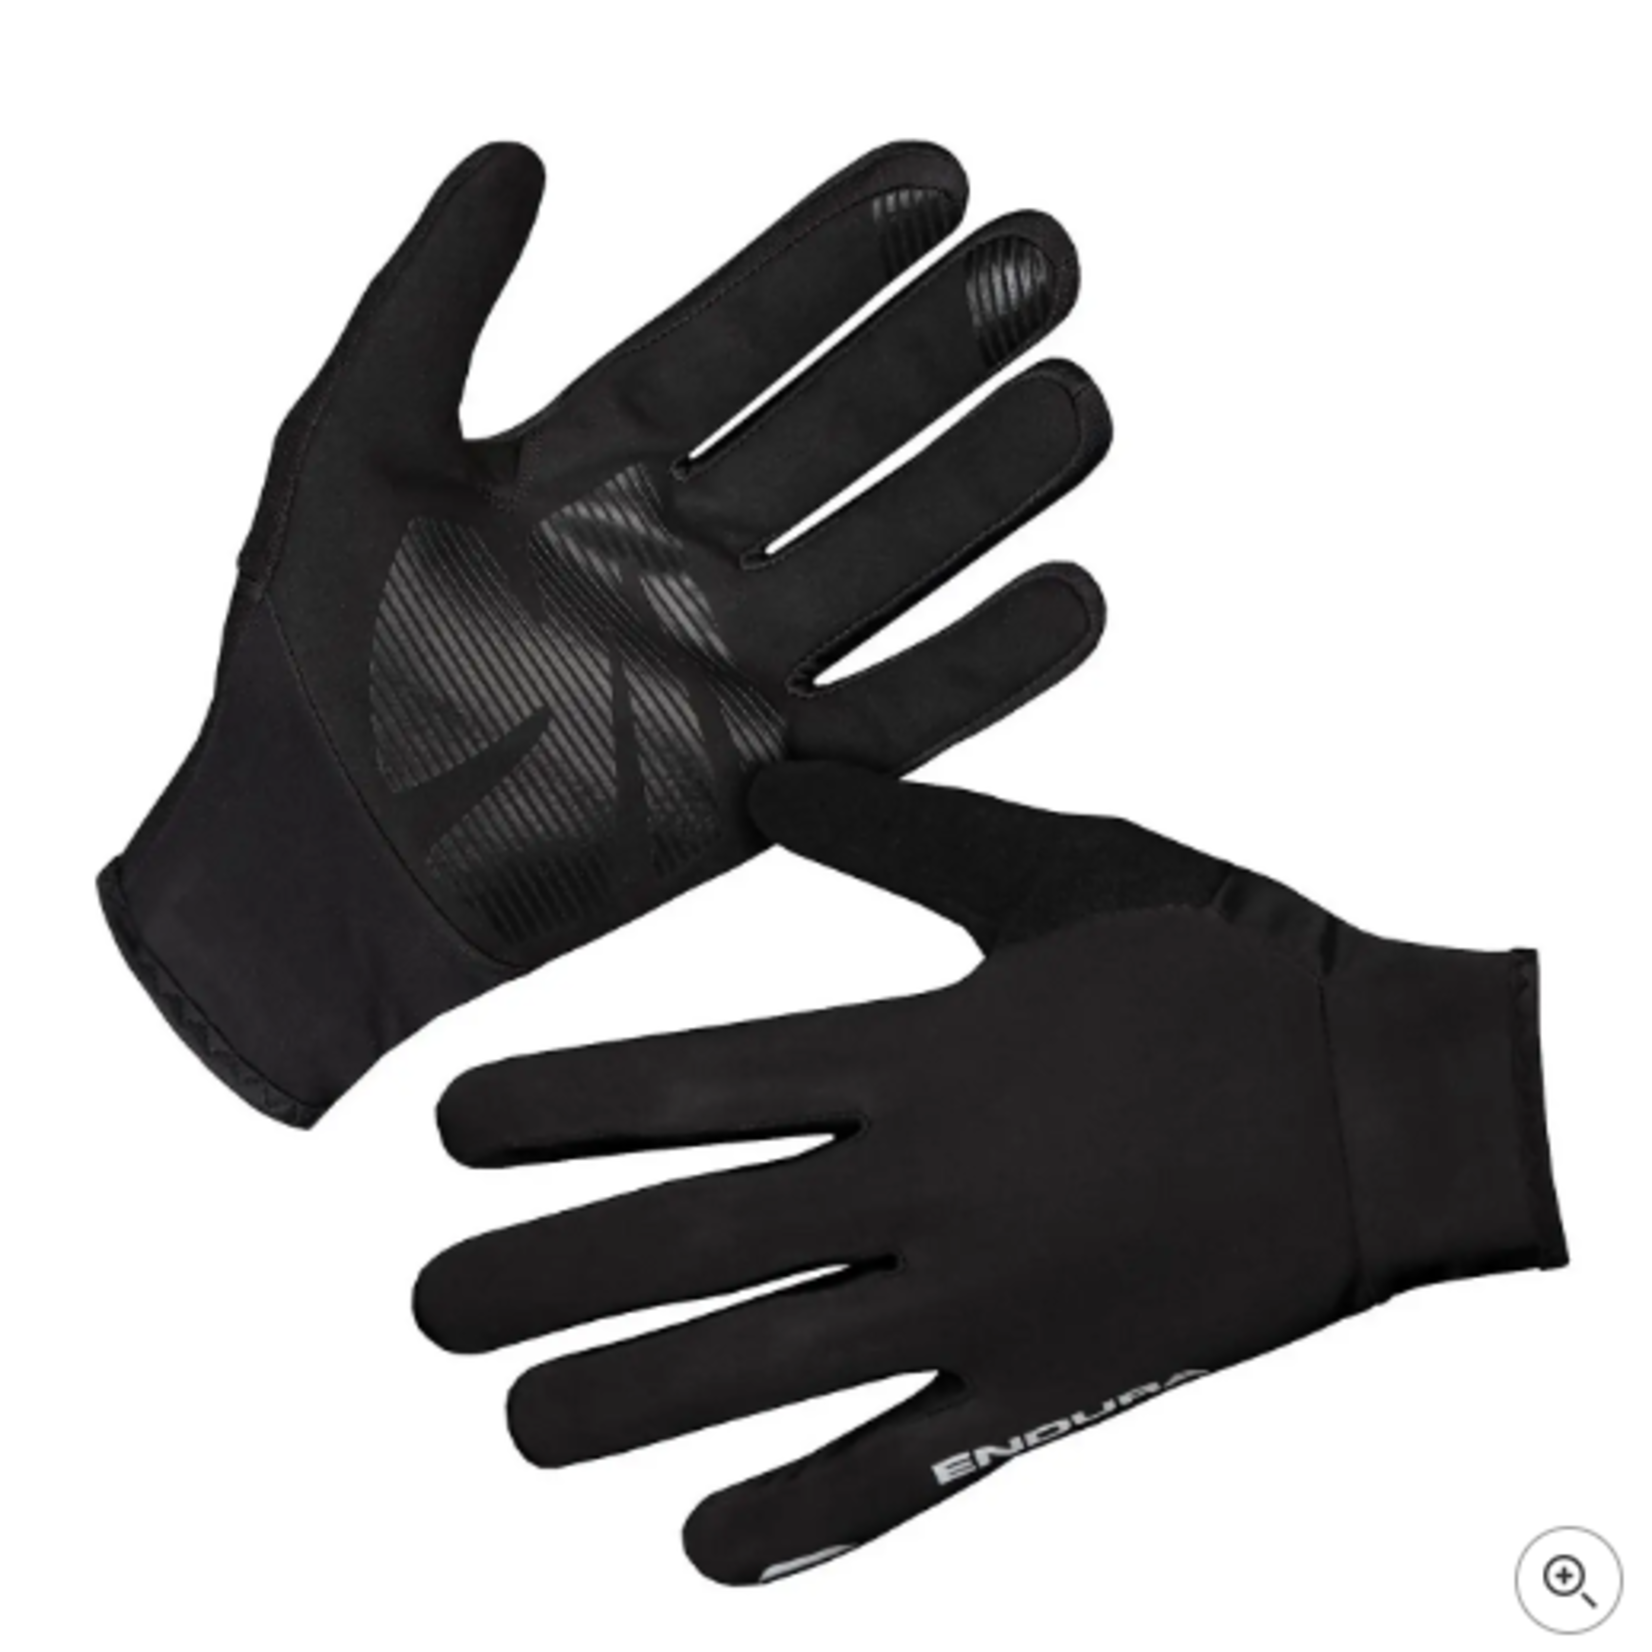 Endura FS260 Pro Thermo Glove